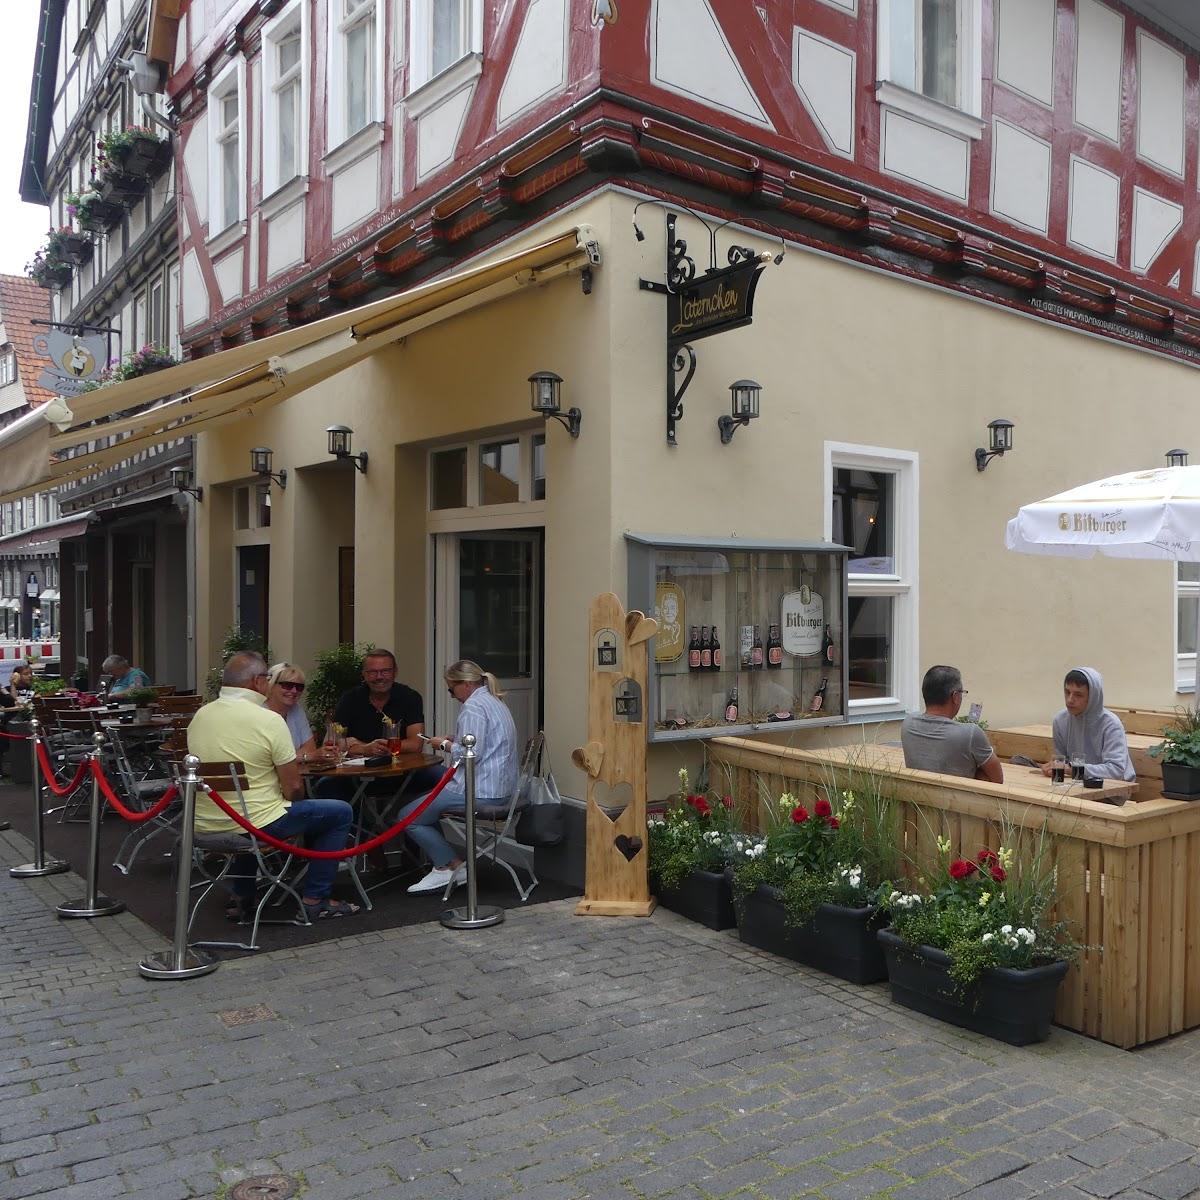 Restaurant "Laternchen… das er Wirtshaus" in Alsfeld